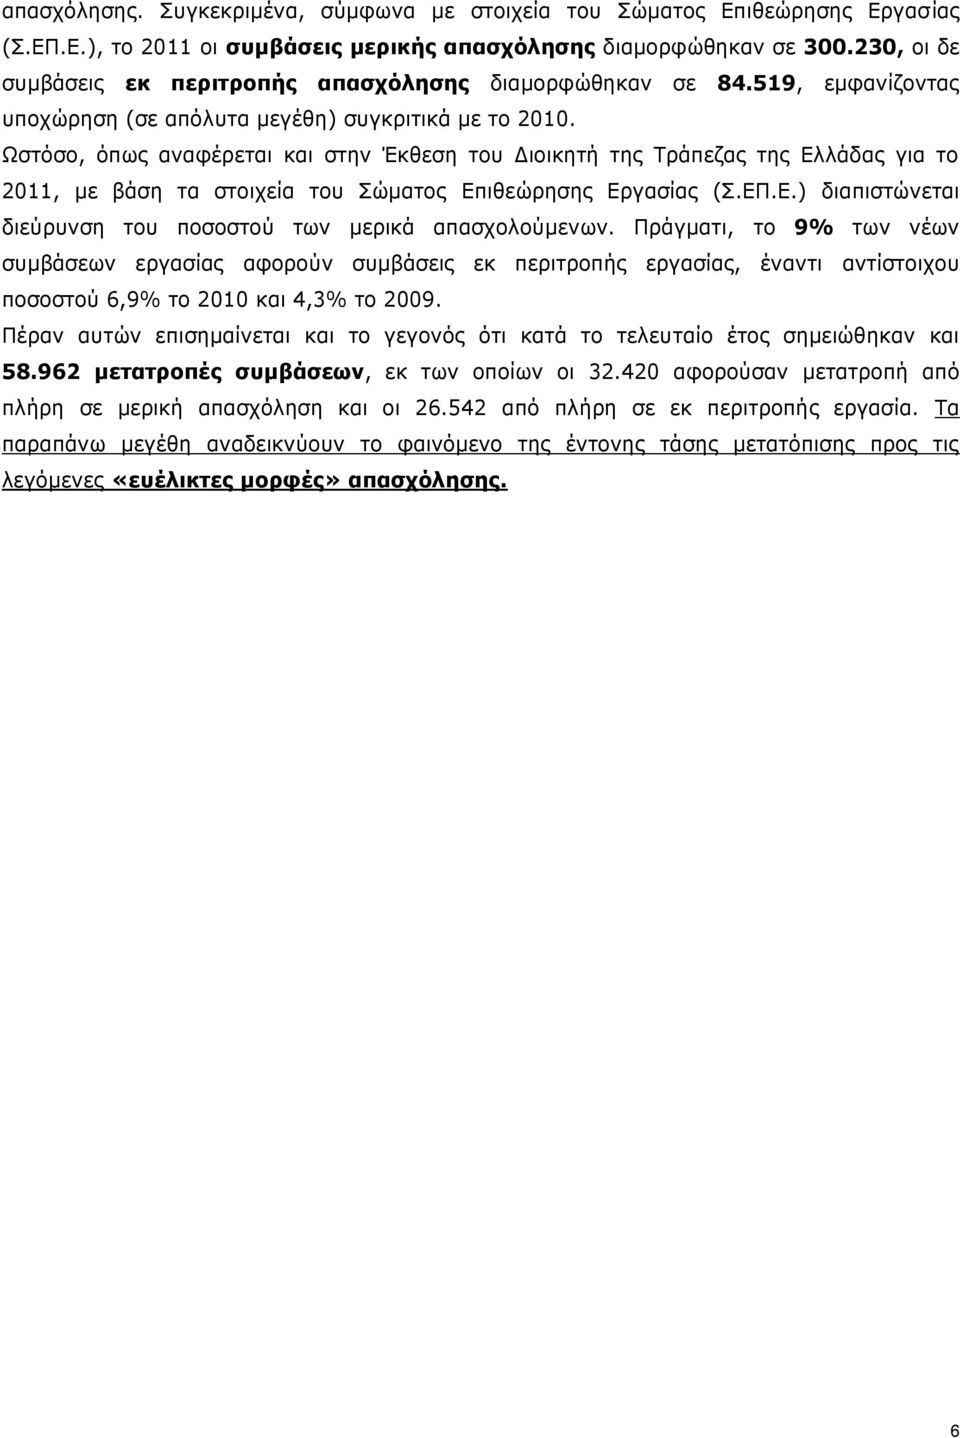 Ωστόσο, όπως αναφέρεται και στην Έκθεση του Διοικητή της Τράπεζας της Ελλάδας για το 2011, με βάση τα στοιχεία του Σώματος Επιθεώρησης Εργασίας (Σ.ΕΠ.Ε.) διαπιστώνεται διεύρυνση του ποσοστού των μερικά απασχολούμενων.